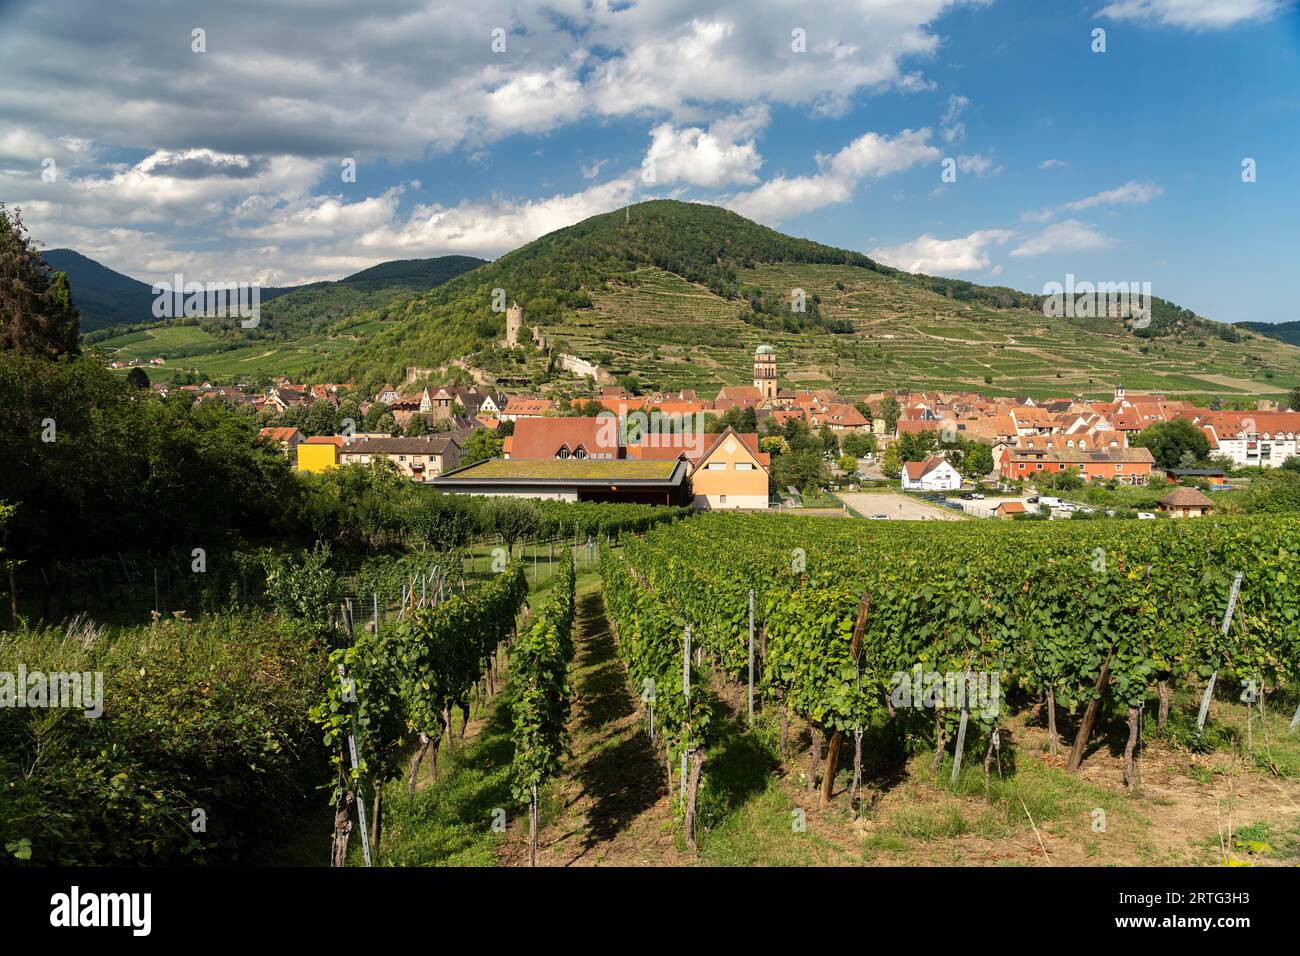 Stadtansicht und Landschaft mit Weinbergen um Kaysersberg, Elsass, Frankreich  |  Cityscape and landscape with vineyard in Kaysersberg, Alsace, France Stock Photo